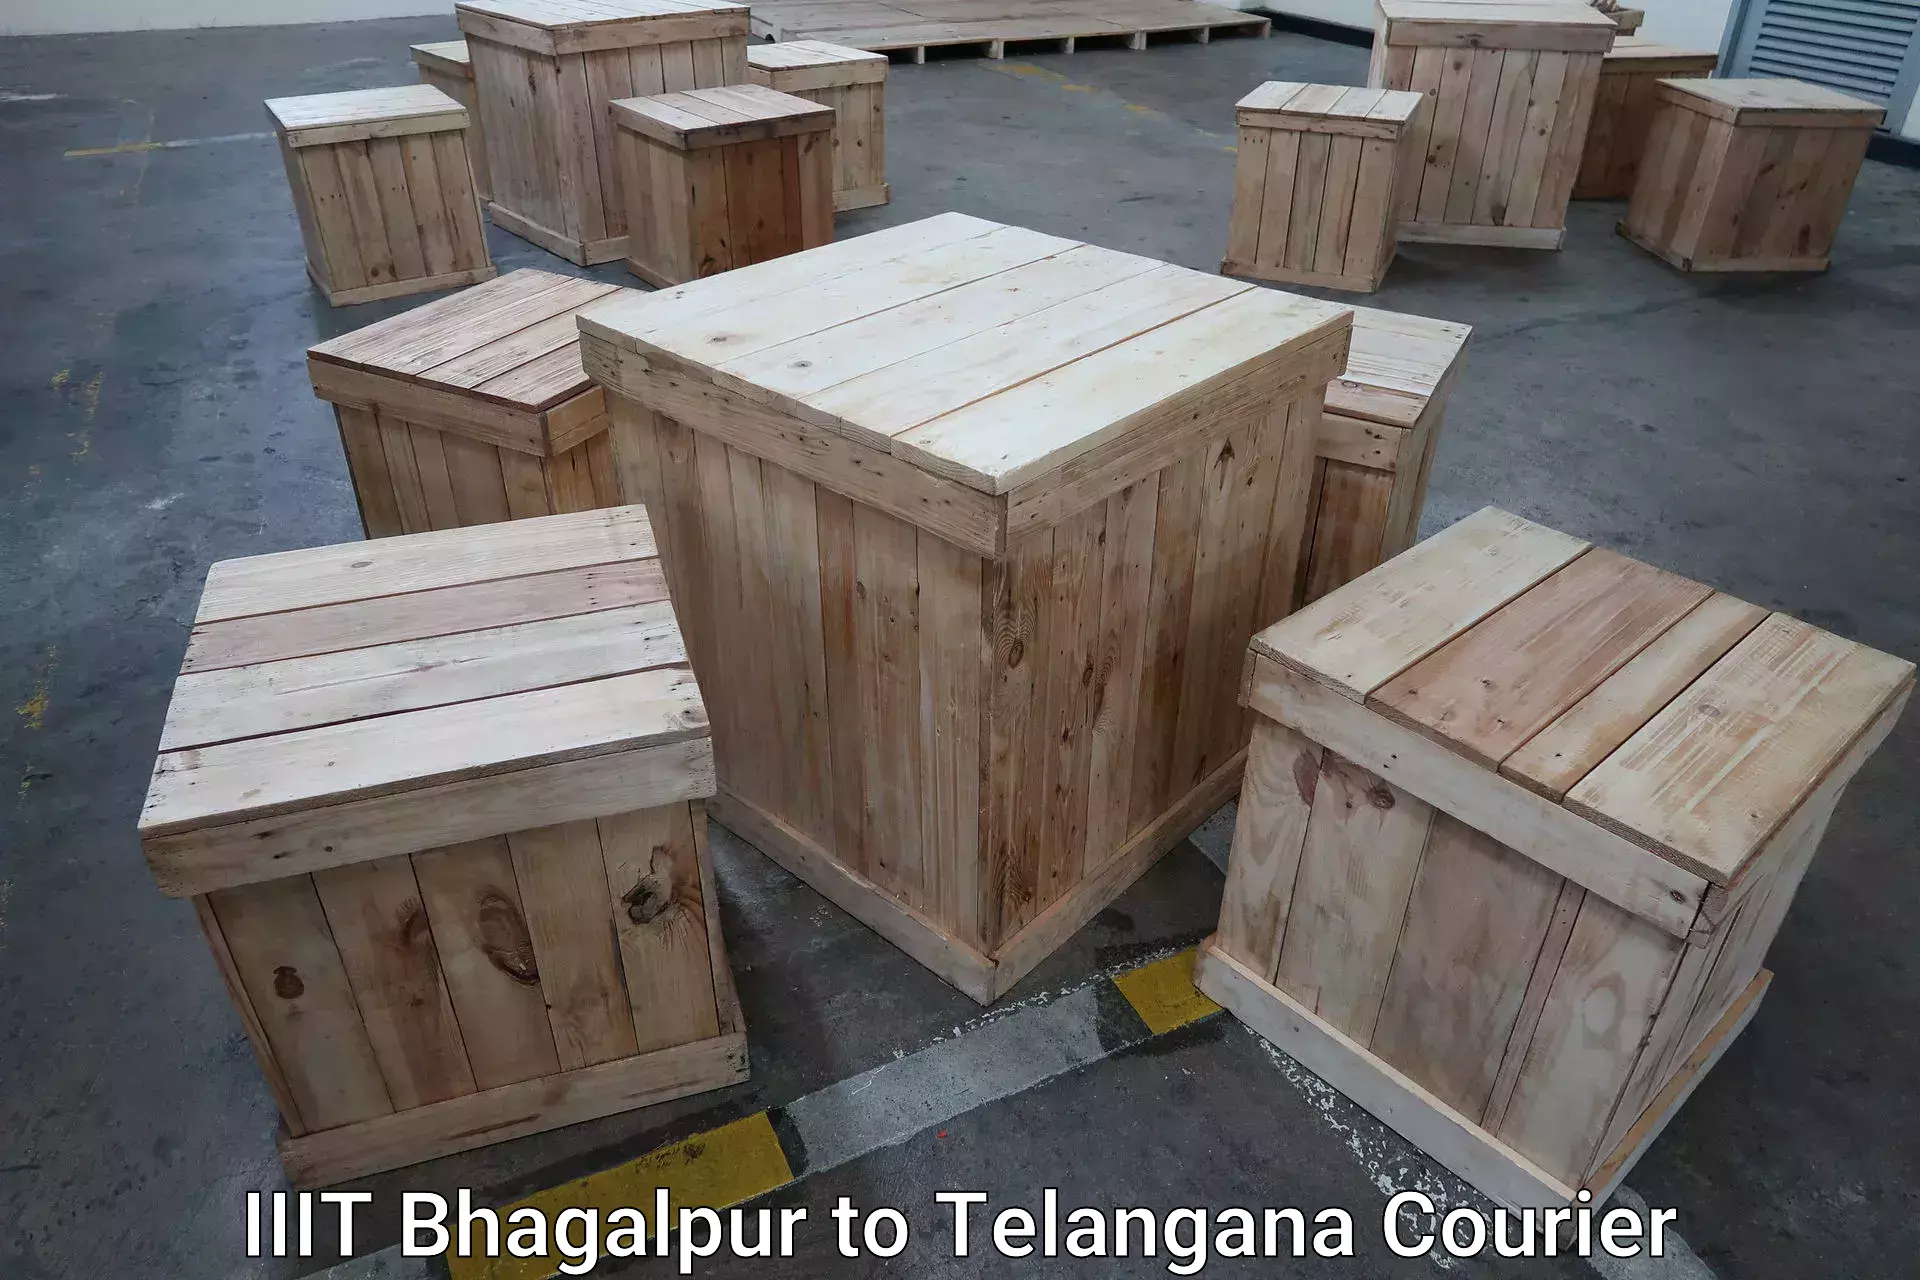 Baggage shipping advice IIIT Bhagalpur to Warangal